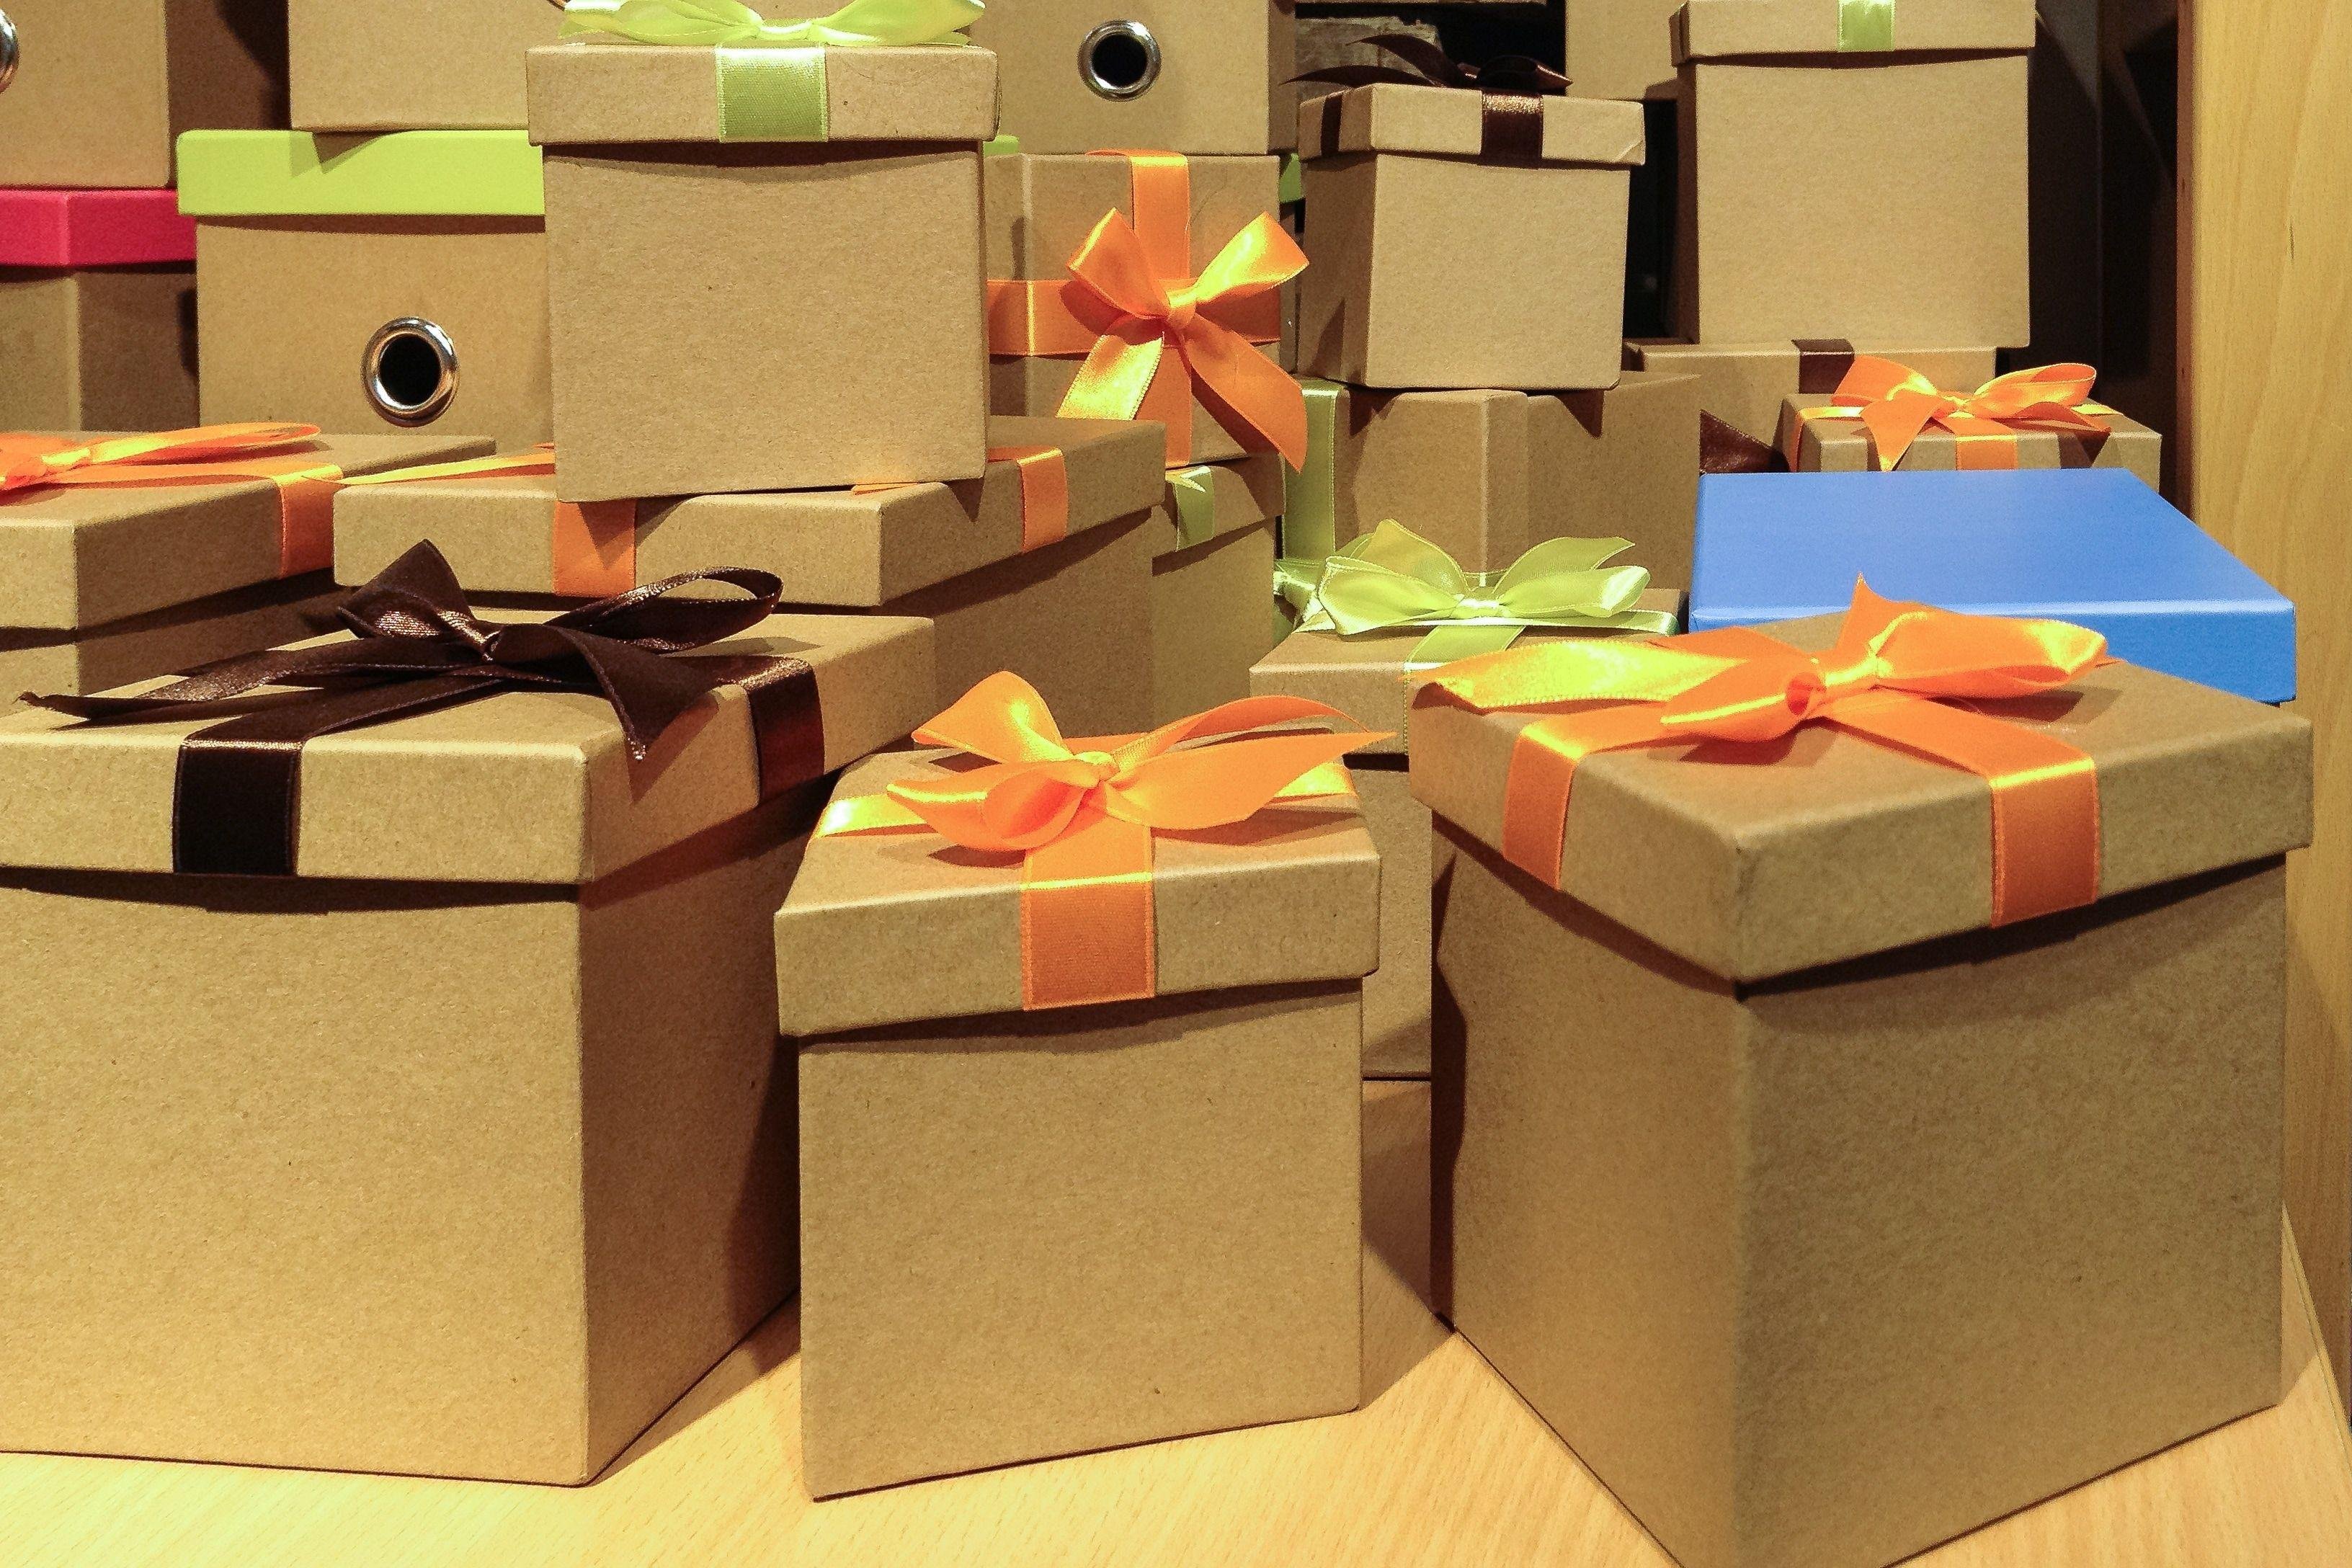 Фотографии сюрприза. Подарки и упаковка. Подарок в коробке. Большая коробка для подарка. Огромная коробка для подарка.